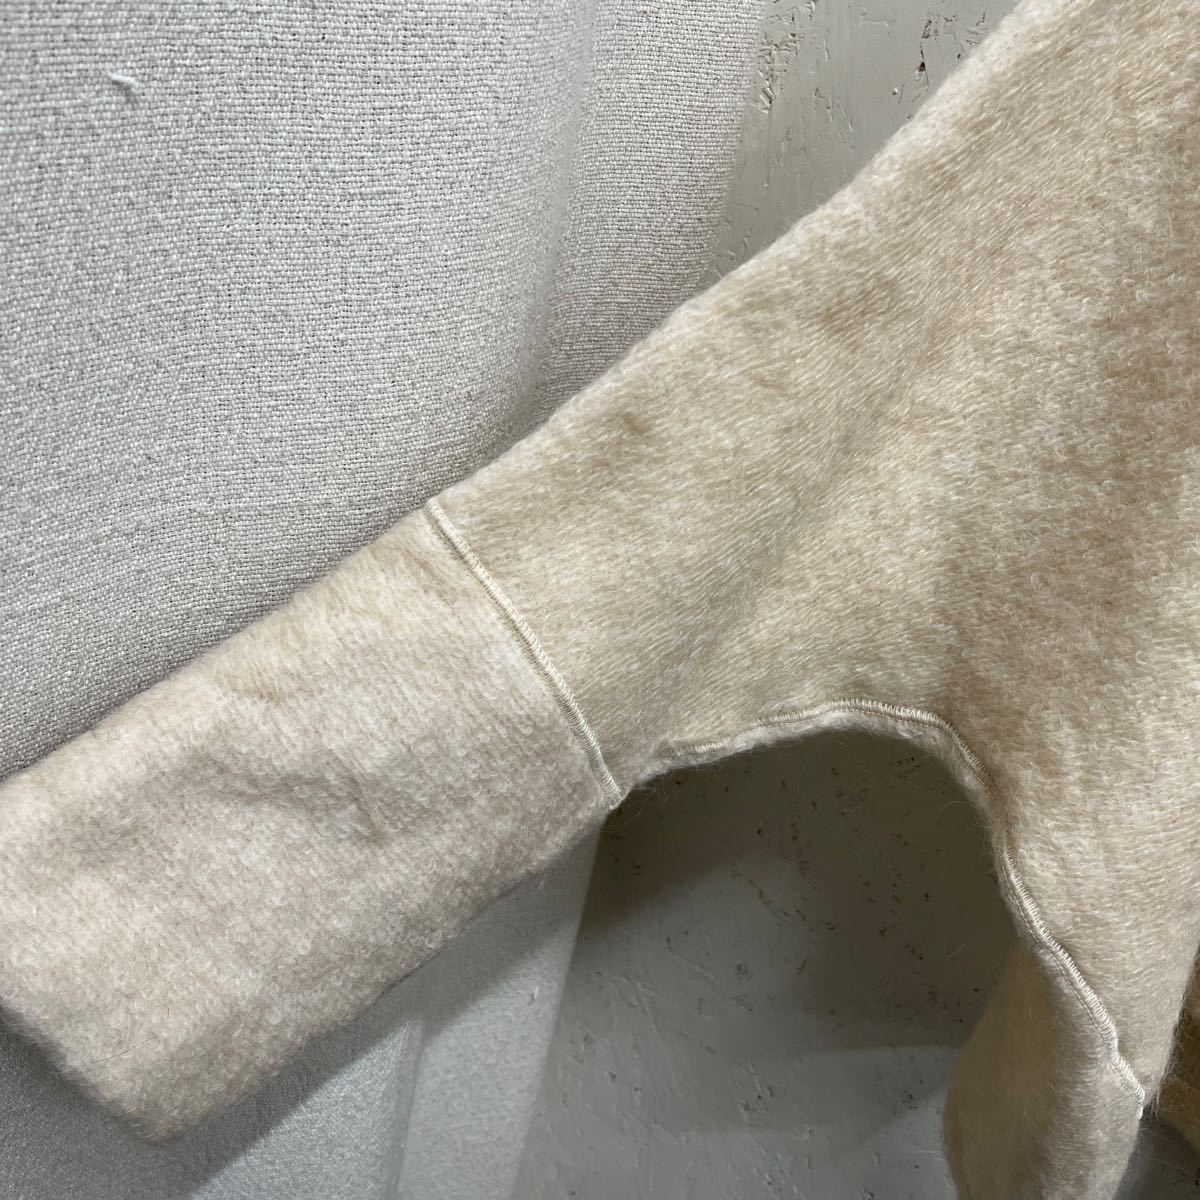 [ прекрасный товар!]b24 ichiichi шерсть moheya. длинный рукав кардиган слоновая кость бежевый мягкий материалы легкий свободно! сделано в Японии рекомендация!